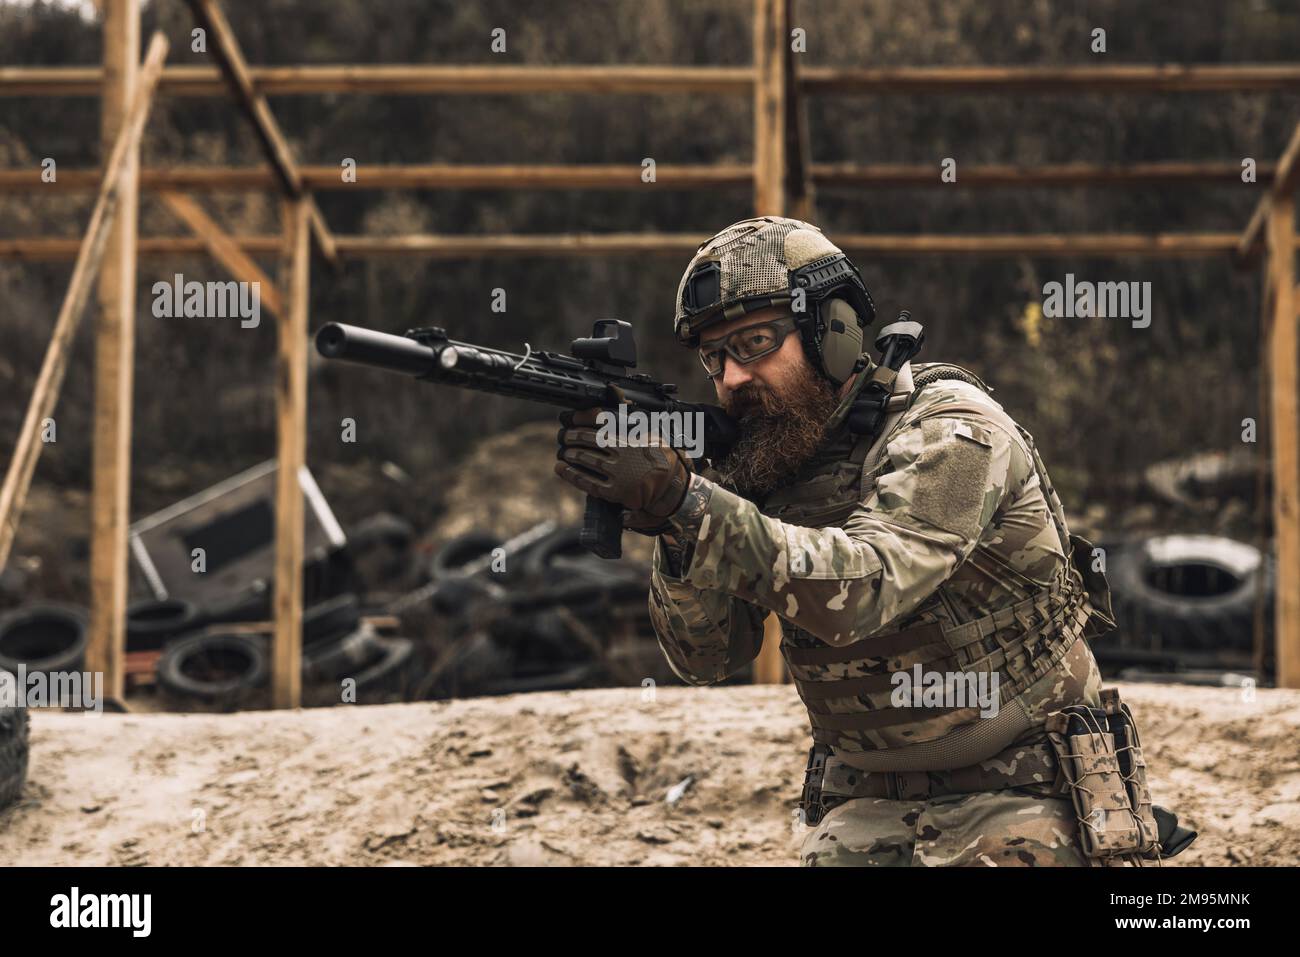 Soldat en camouflage avec un fusil dans les mains Banque D'Images